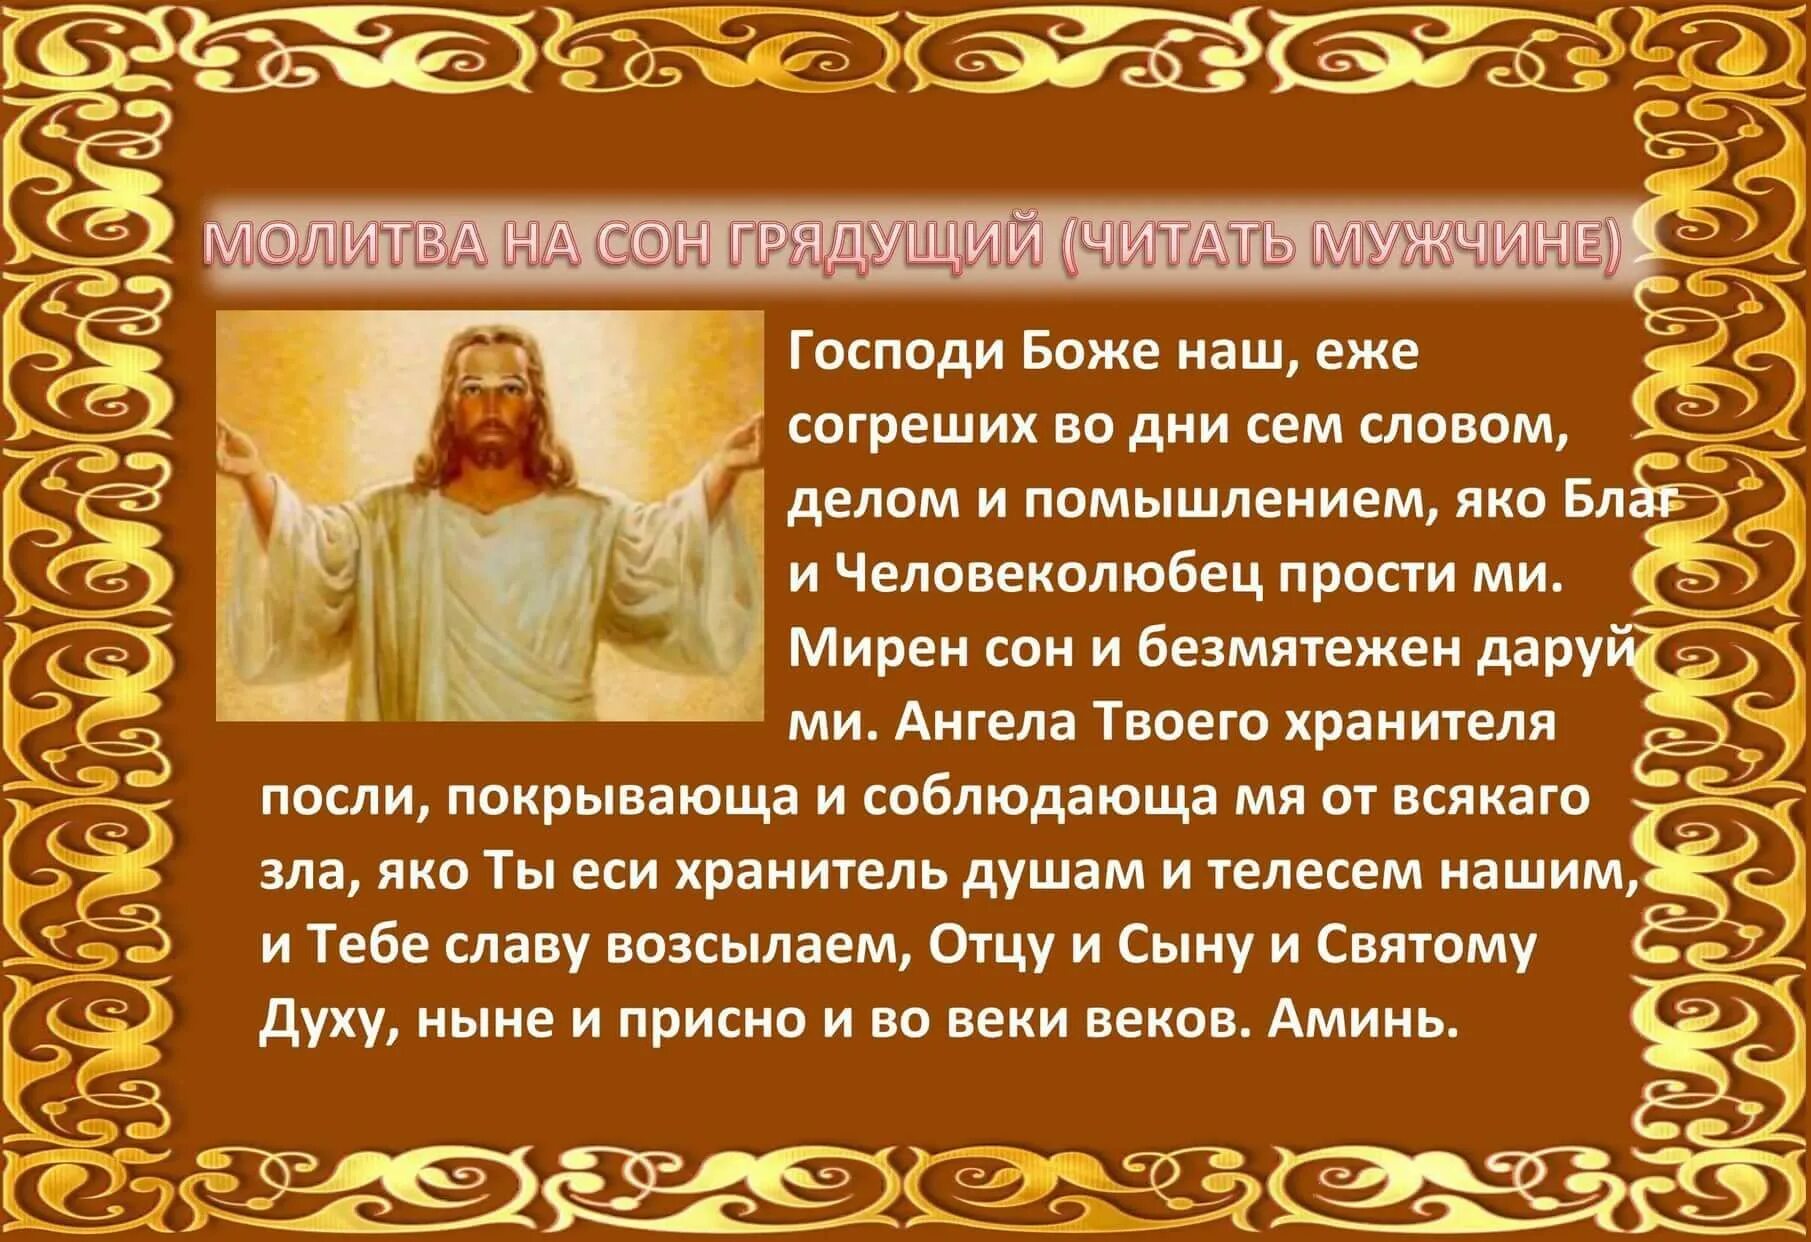 Молитва перед сном Христианская. Молитва на ночь перед сном короткая. Молитва на сон грядущий православная. Молитва на сон грядущий читать на русском языке.